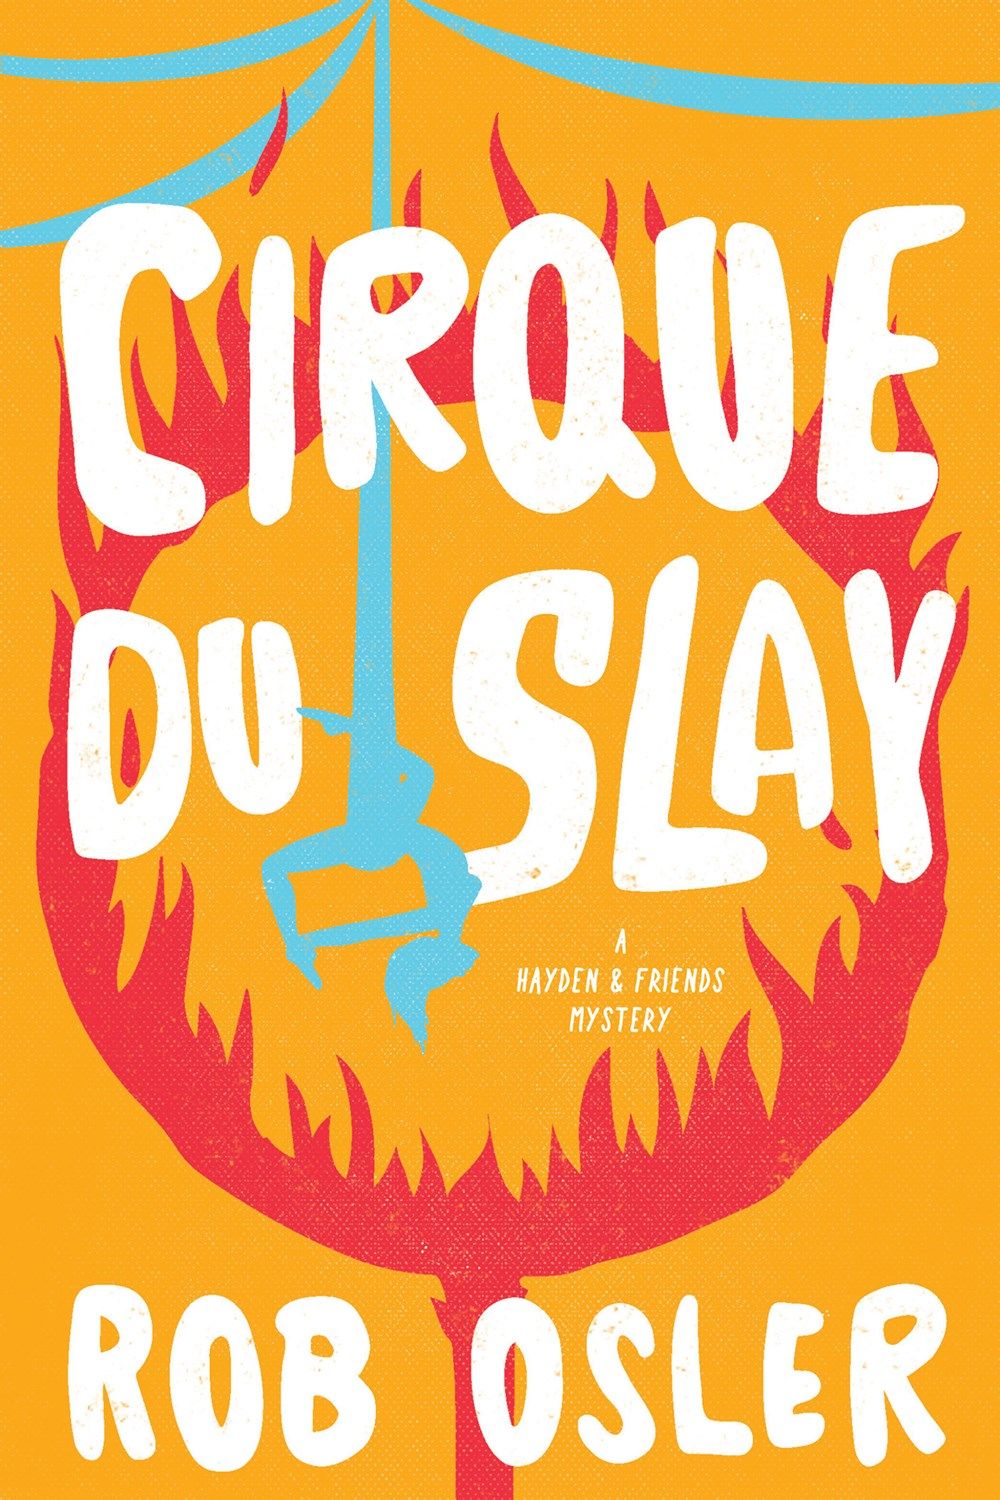 Couverture du Cirque du Slay